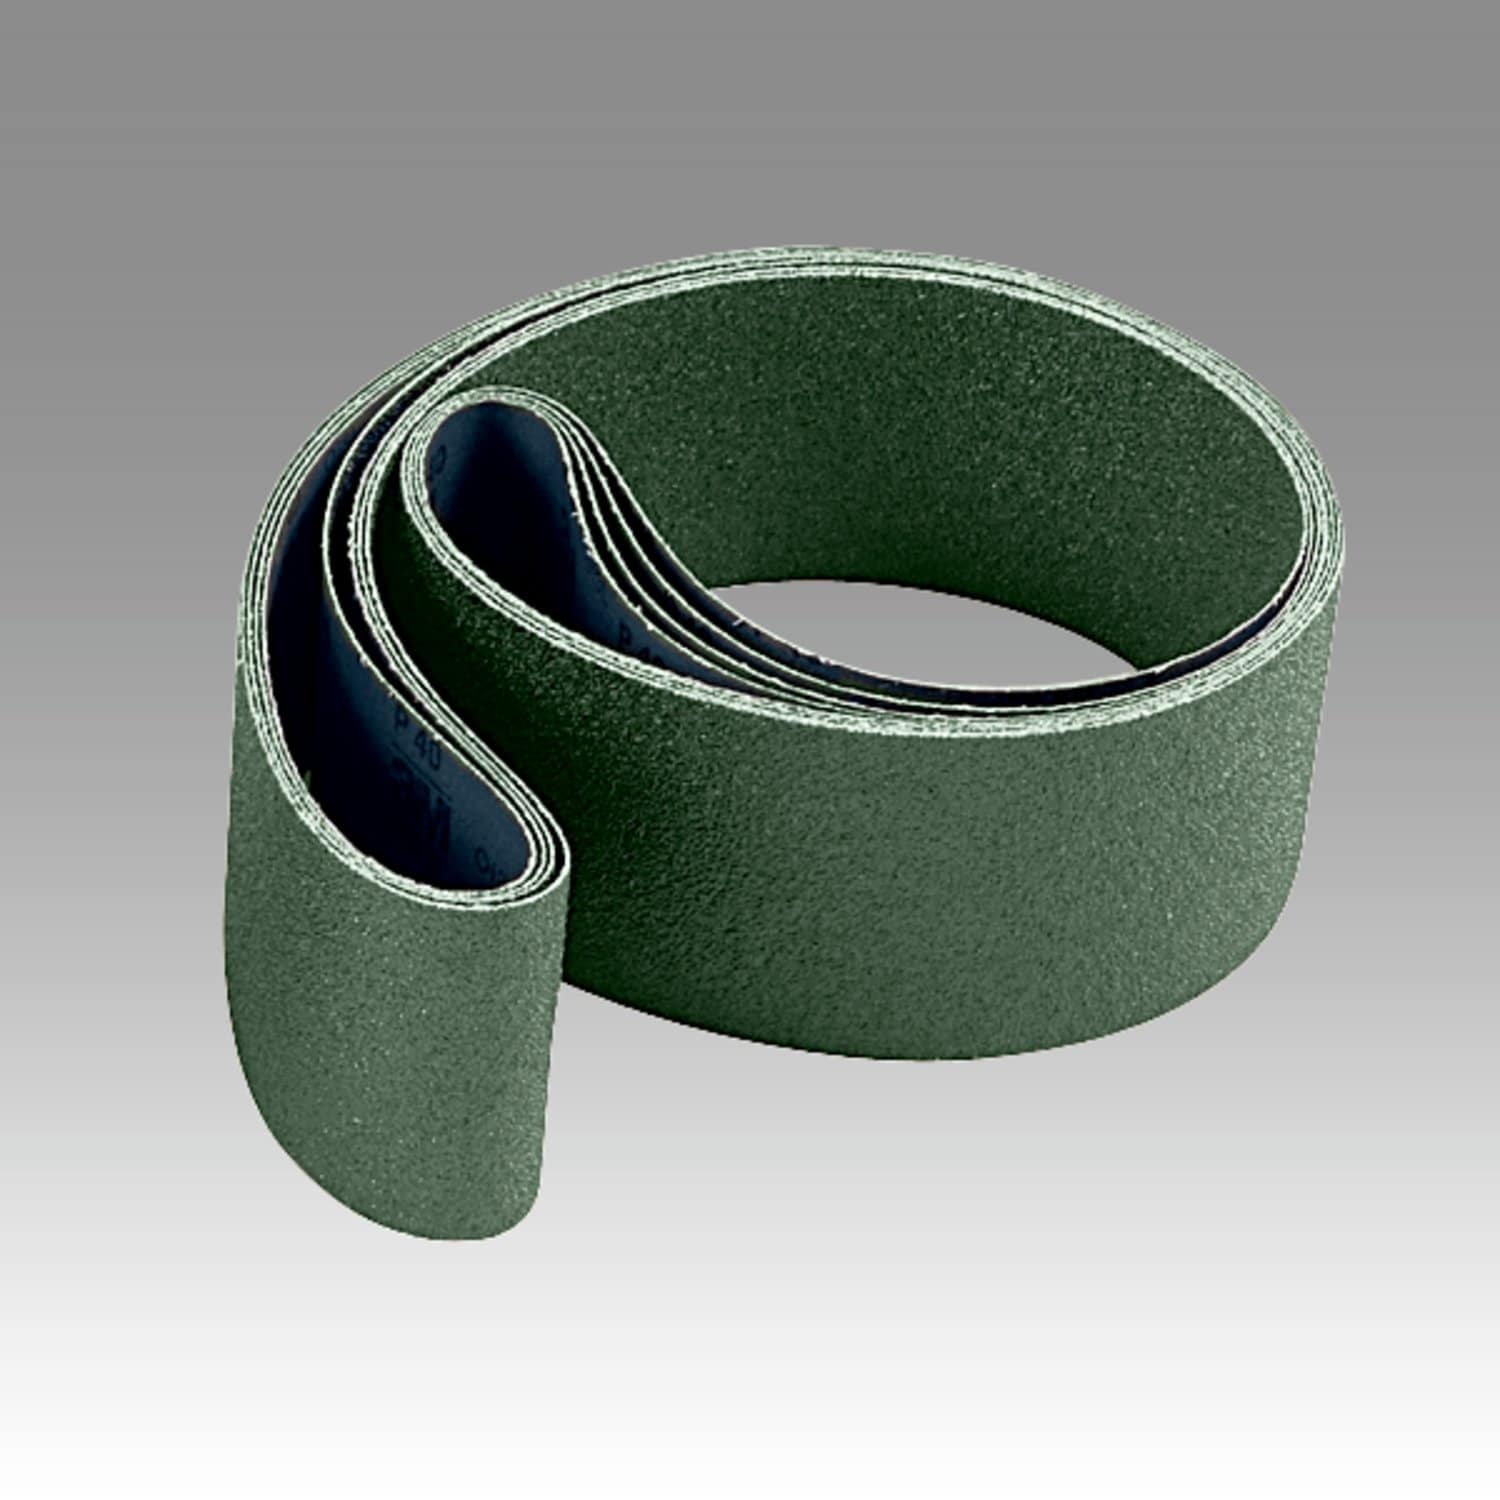 7100020439 - Scotch-Brite Surface Conditioning Low Stretch Belt, SC-BL, A/O Medium,
37 in x 75 in, 1 ea/Case